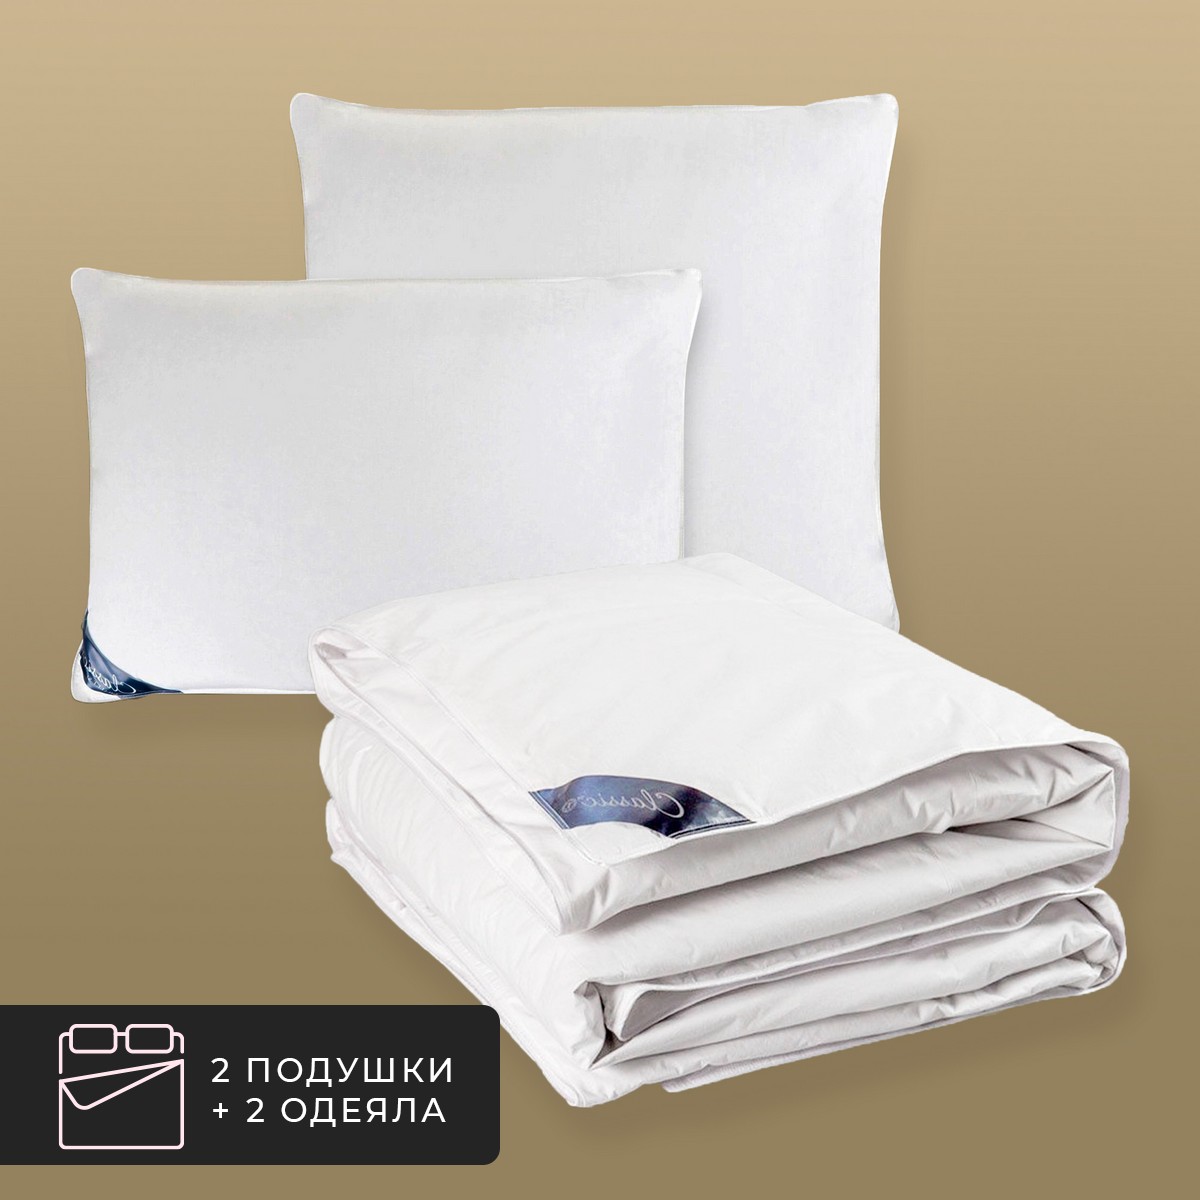 Набор 2 одеяла + 2 подушки Шале, 100% венгерский гусиный пух в хлопковом тике (140х200-2 шт, 50х70-2 шт)